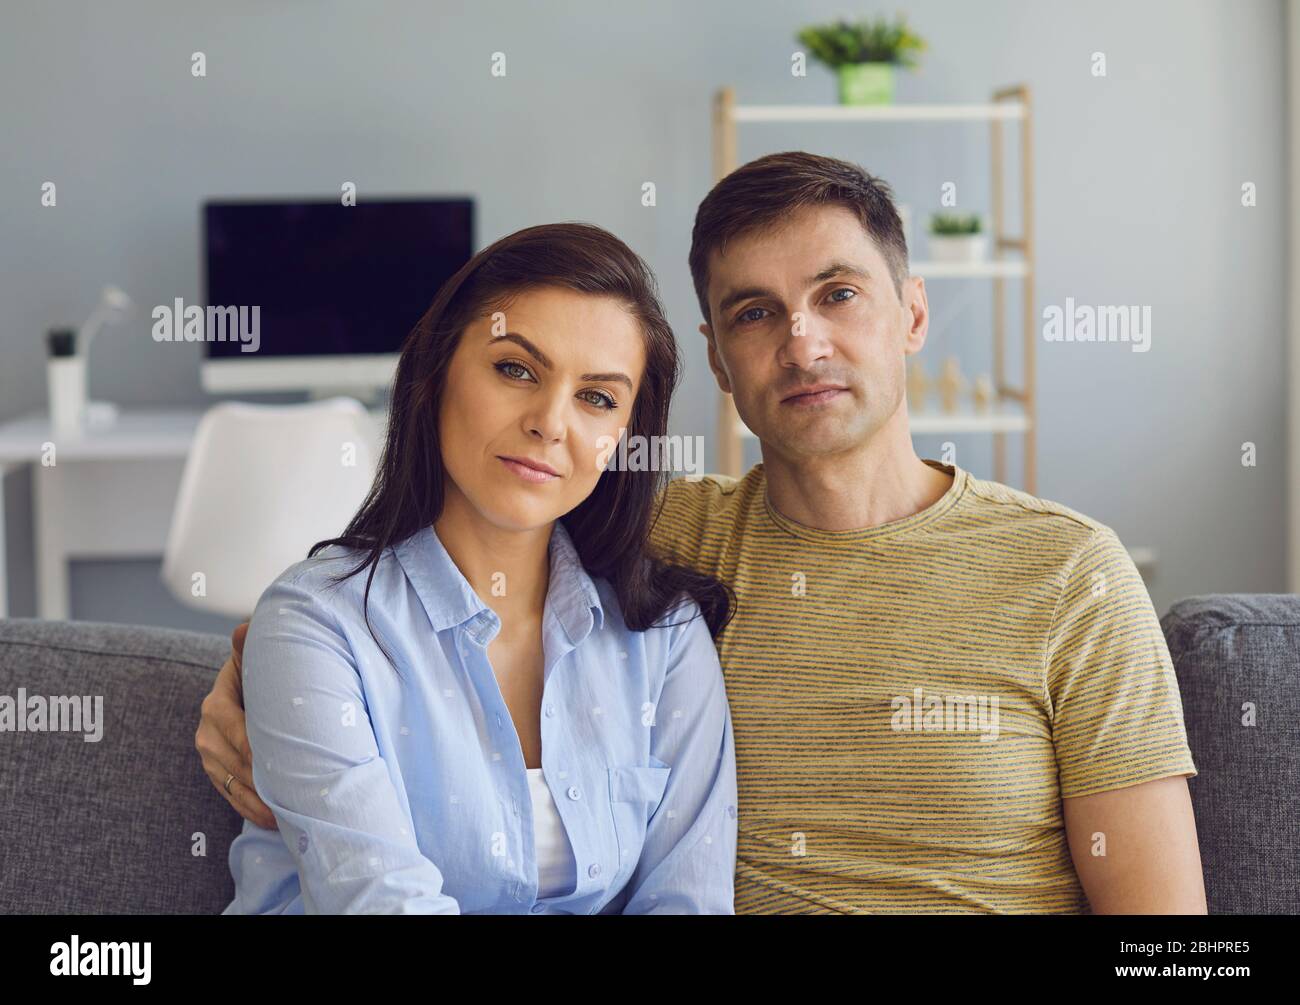 Ein Paar in einer ernsthaften emotionalen Stimmung mit Problemen schaut auf die Kamera, während es auf der Couch sitzt. Stockfoto